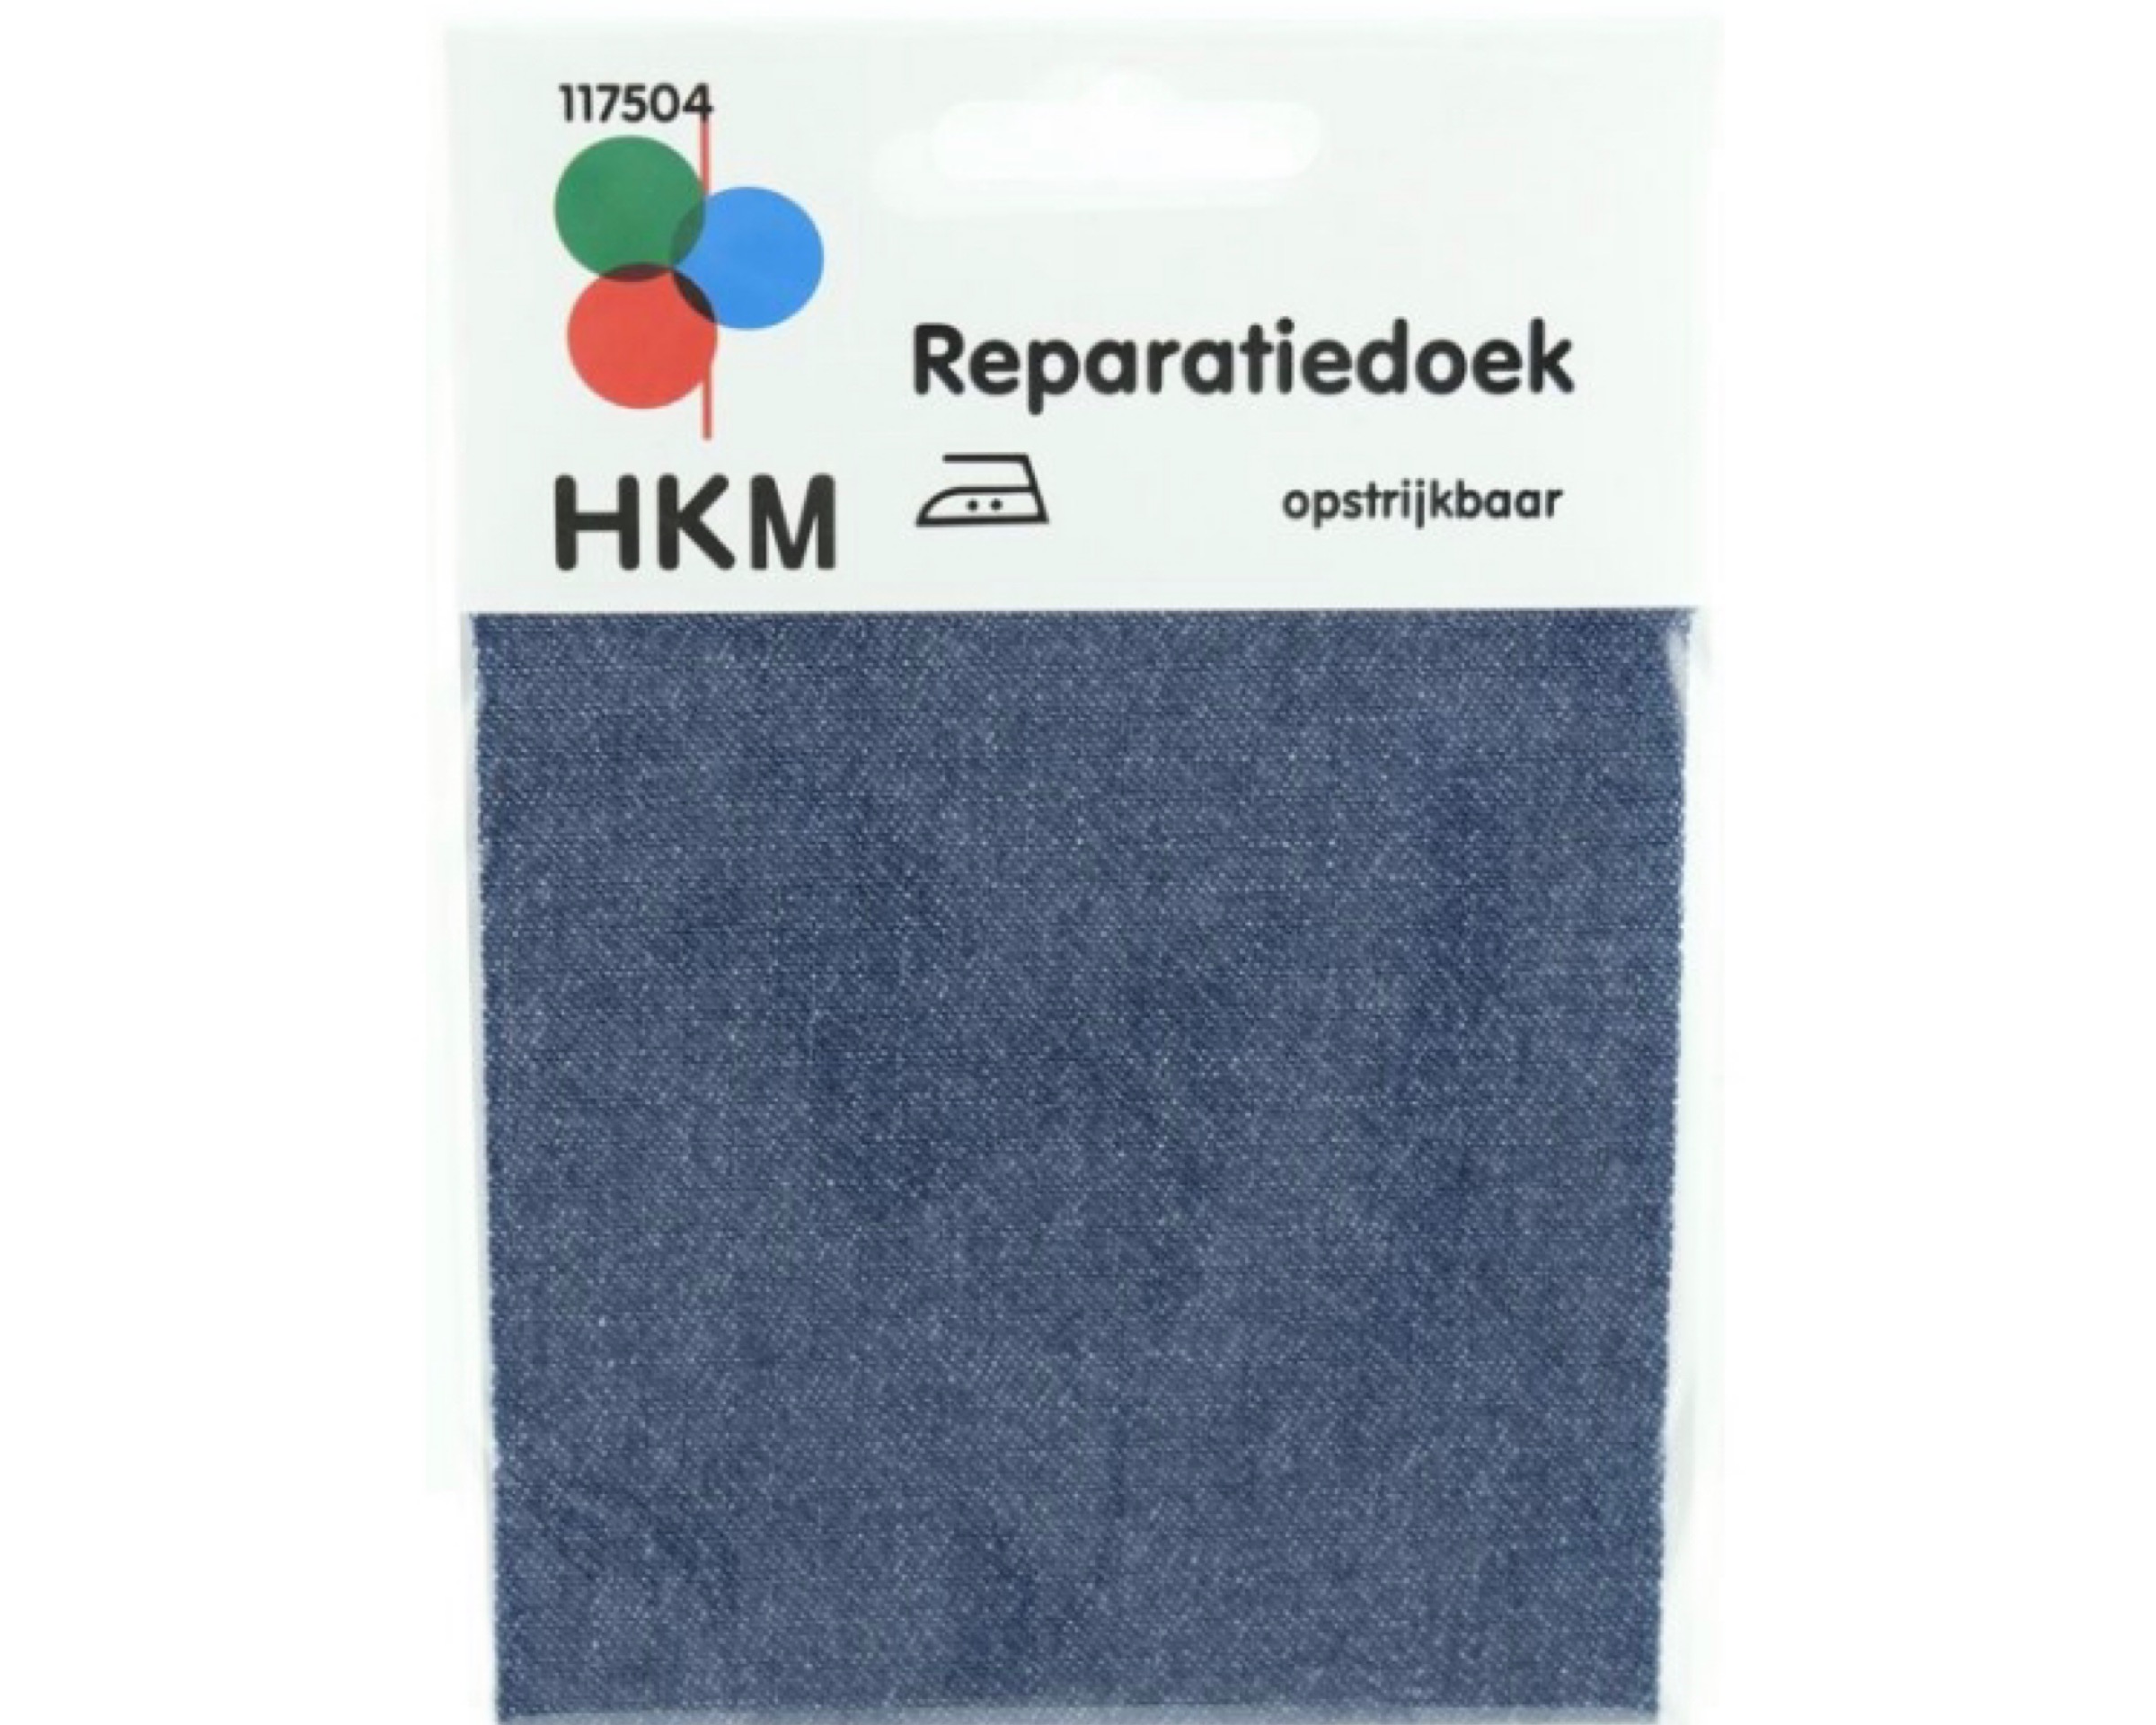 HKM Reparatiedoek Strijkbaar Jeans Medium